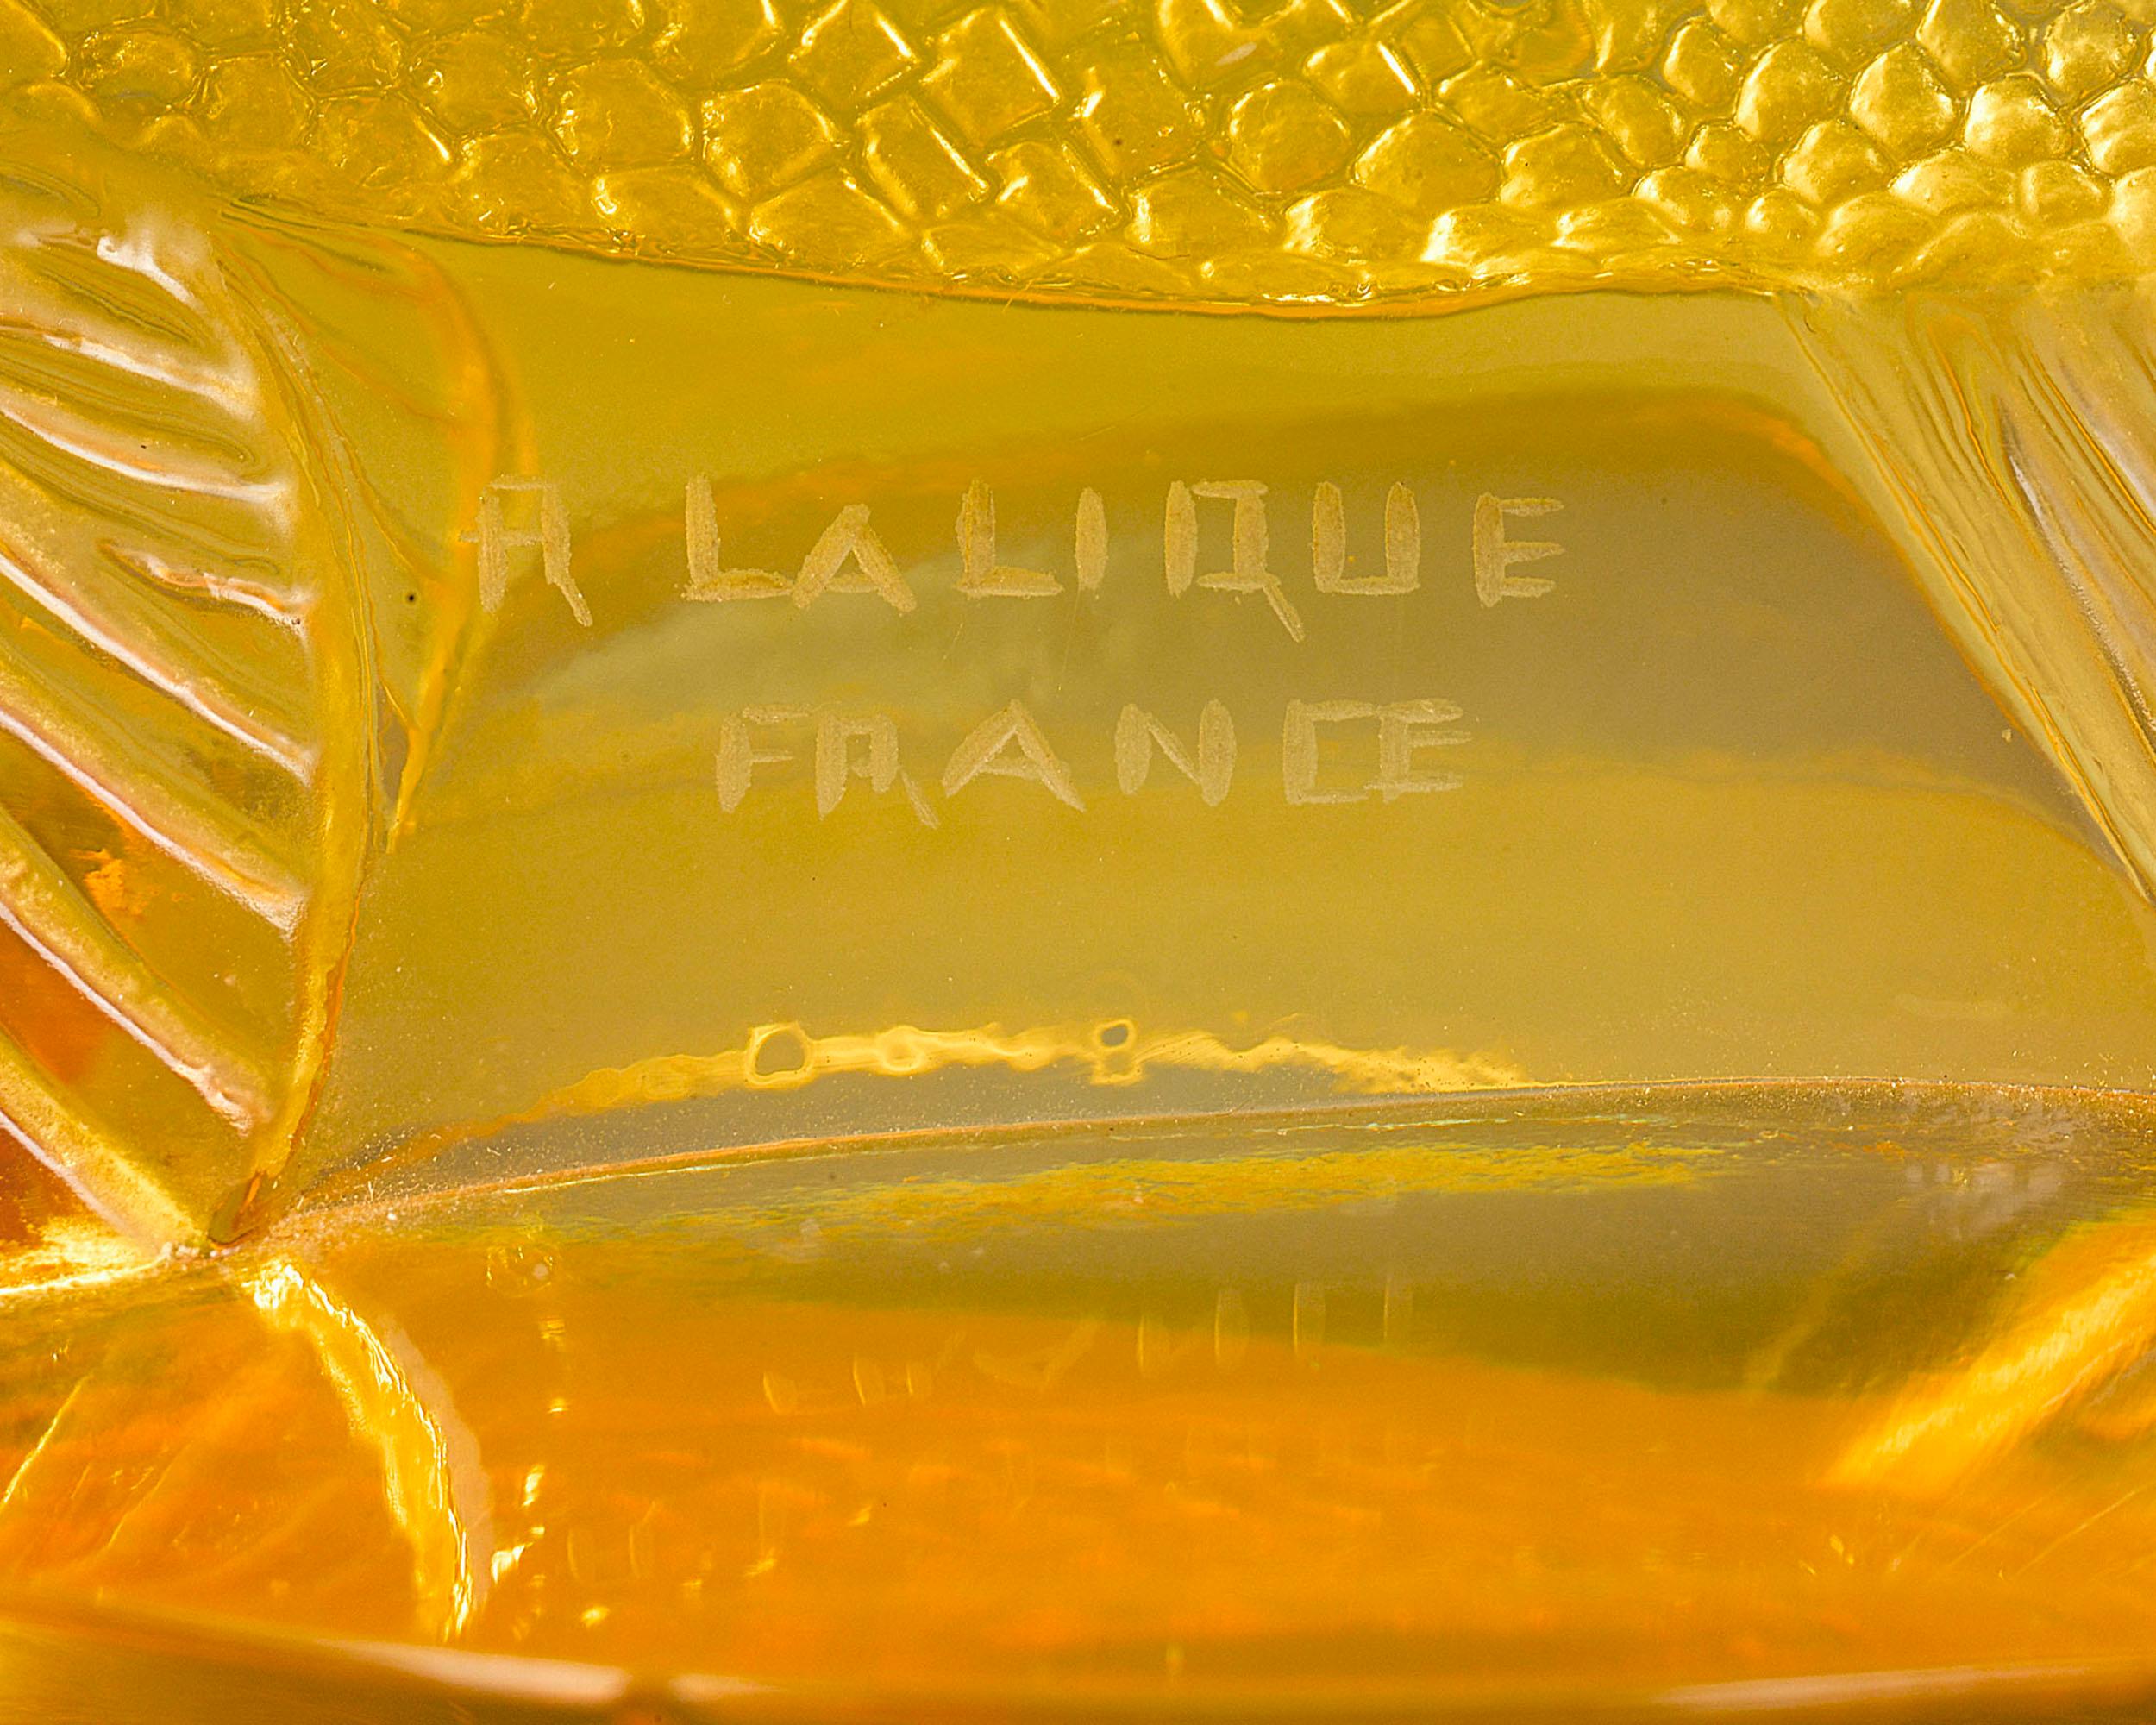 French Lalique Perche Automobile Mascot